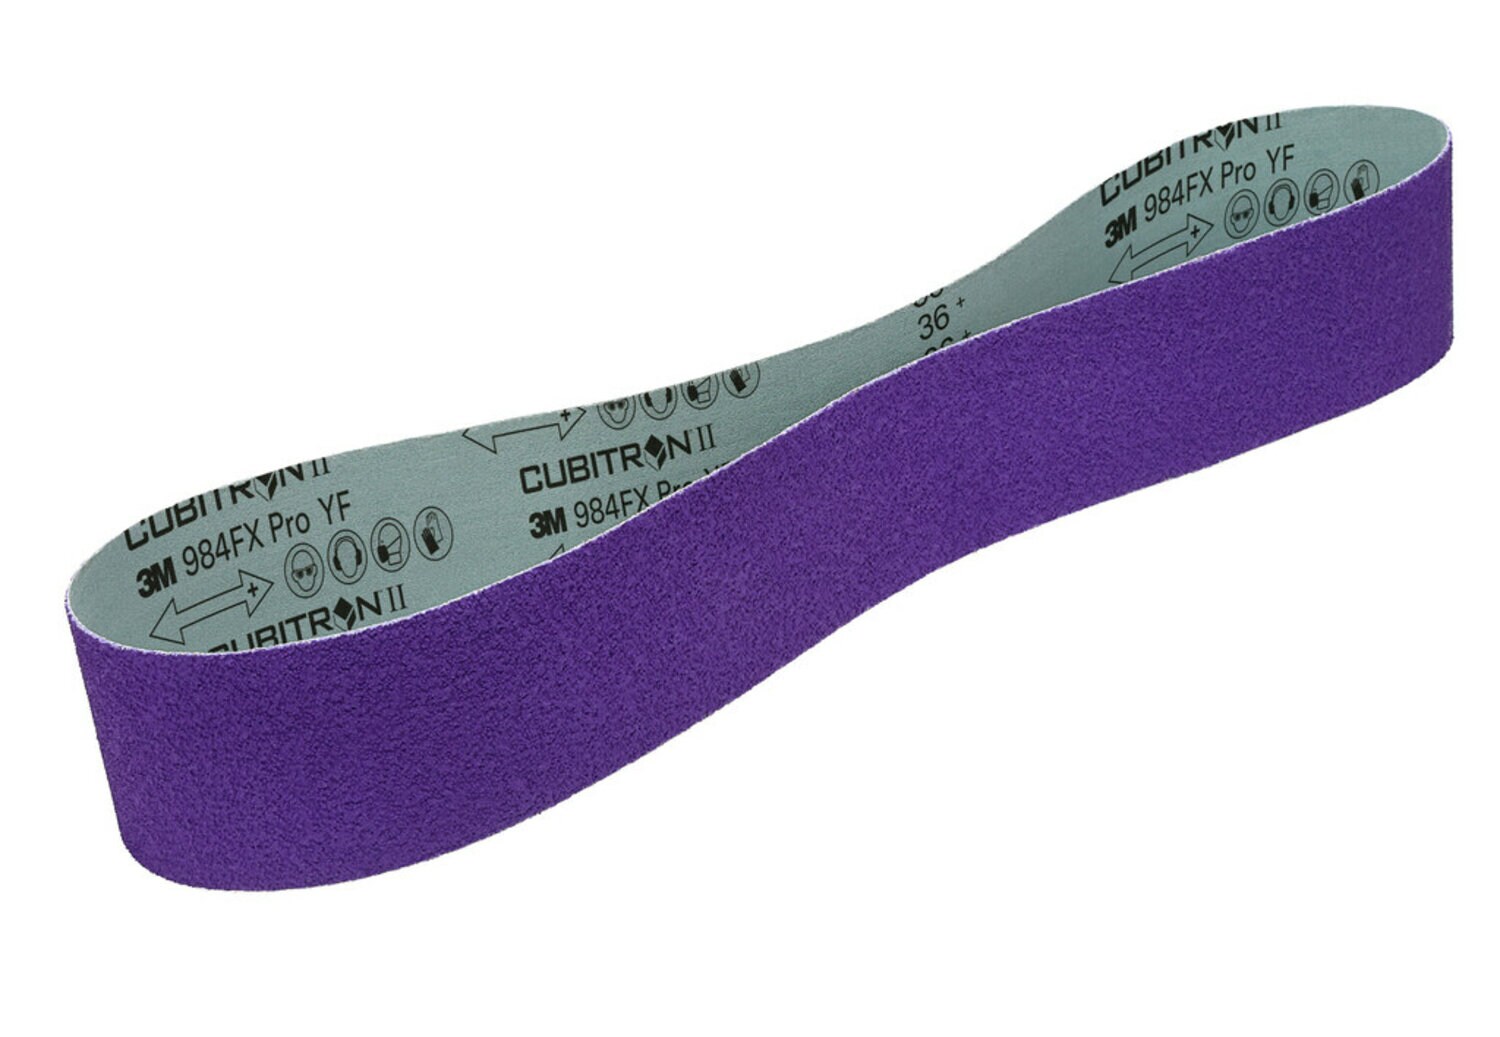 7100244955 - 3M Cubitron II Cloth Belt 984FX Pro, 36+ YF-weight, 4 in x 90 in,
Film-lok, Single-flex, 50 ea/Case